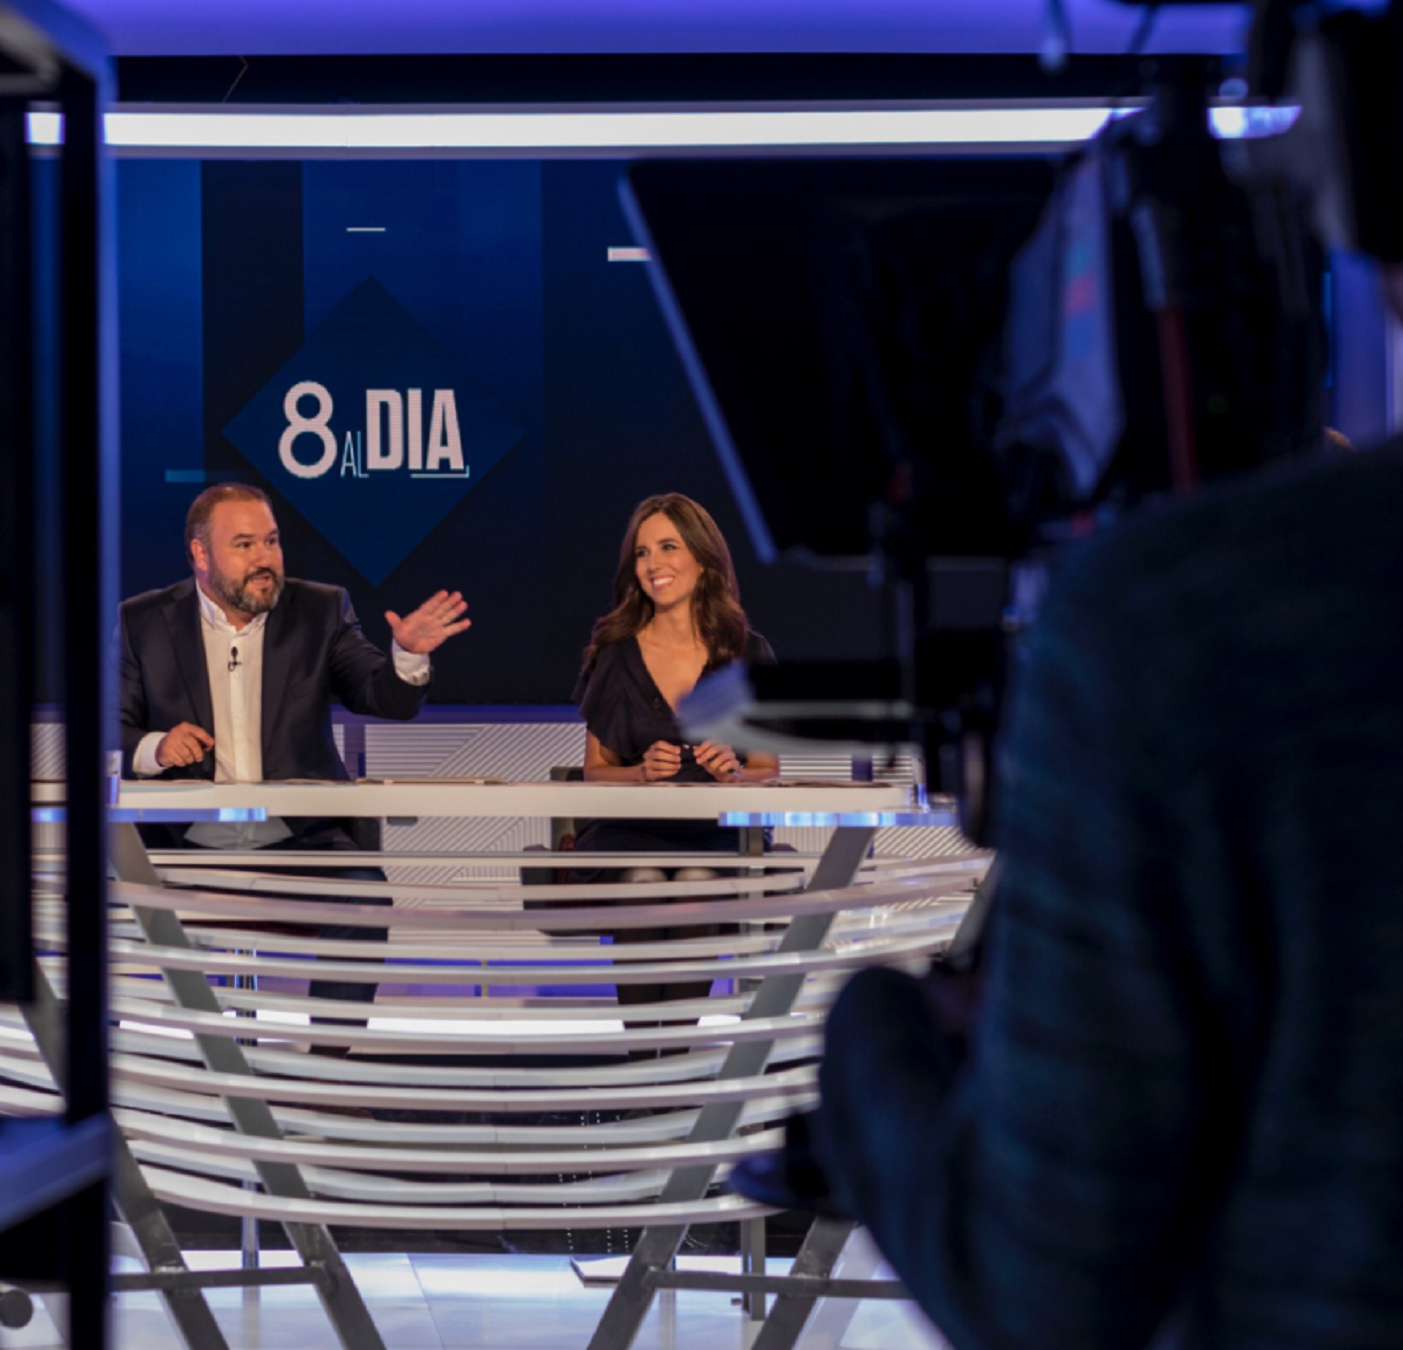 El Madrid hunde a TV3 y dispara a "8 al dia"